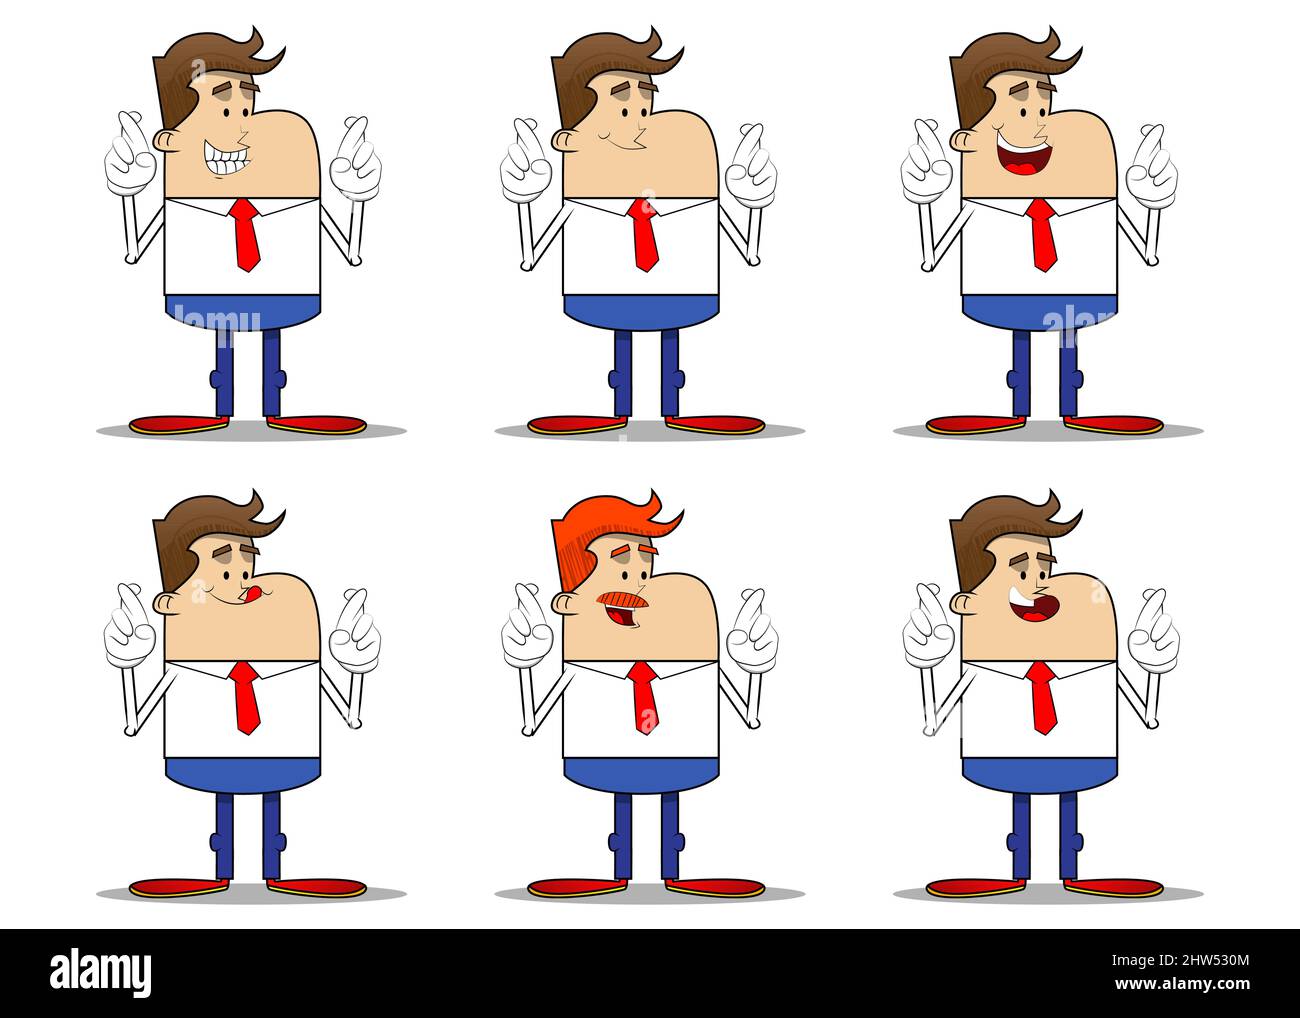 Einfache Retro-Karikatur eines Geschäftsmannes, der die Finger kreuzt und sich Viel Glück. wünscht Professioneller Finanzmitarbeiter in Weiß trägt ein Hemd mit roter Krawatte. Stock Vektor